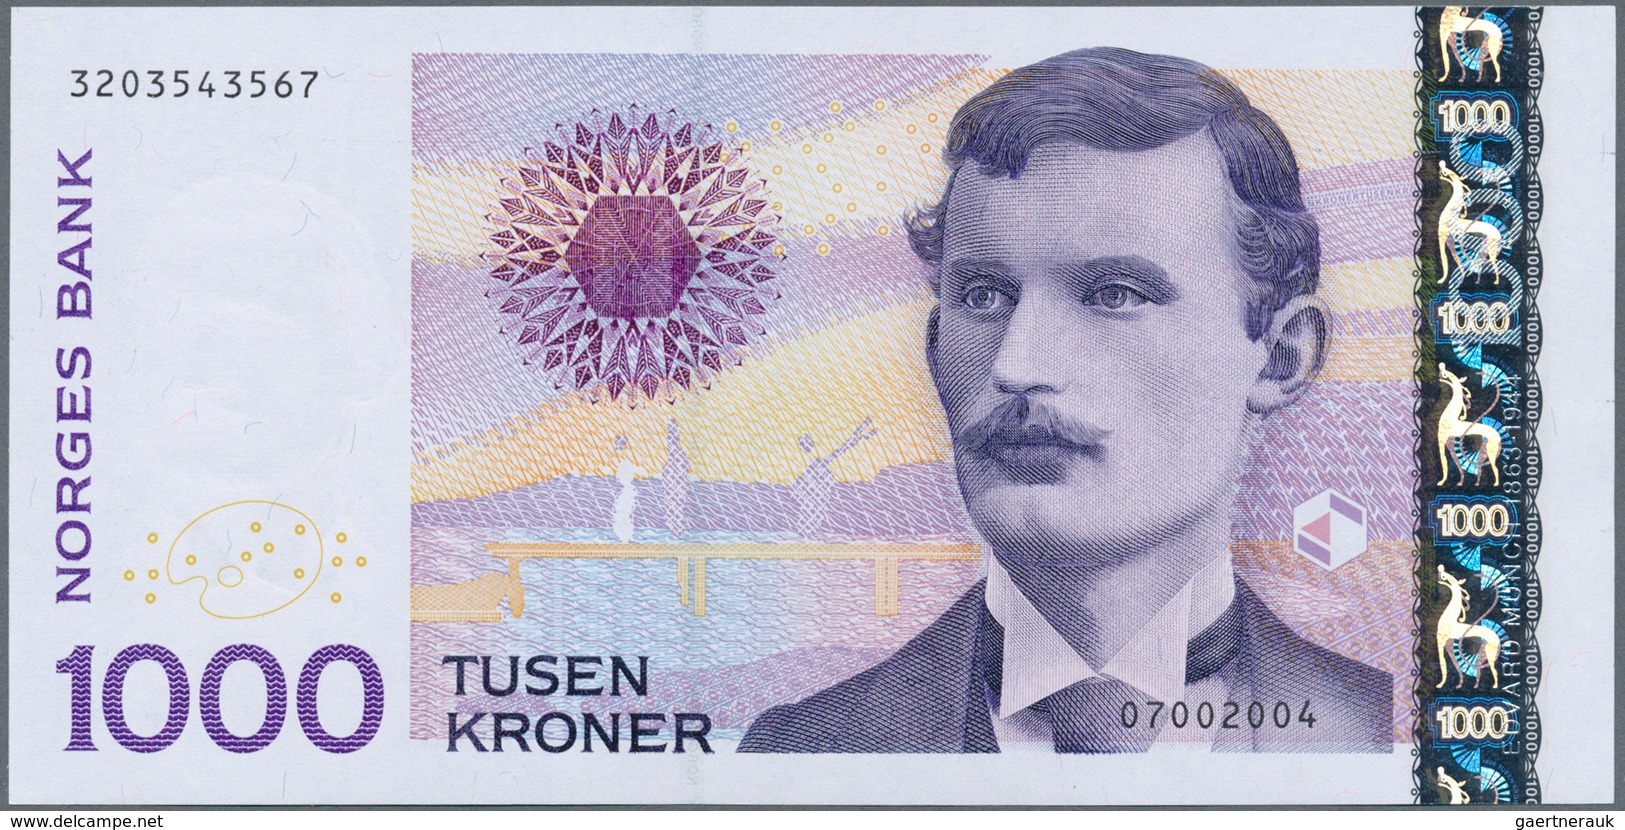 02175 Norway / Norwegen: 1000 Kroner 2004 P. 52 In Condition: UNC. - Noorwegen